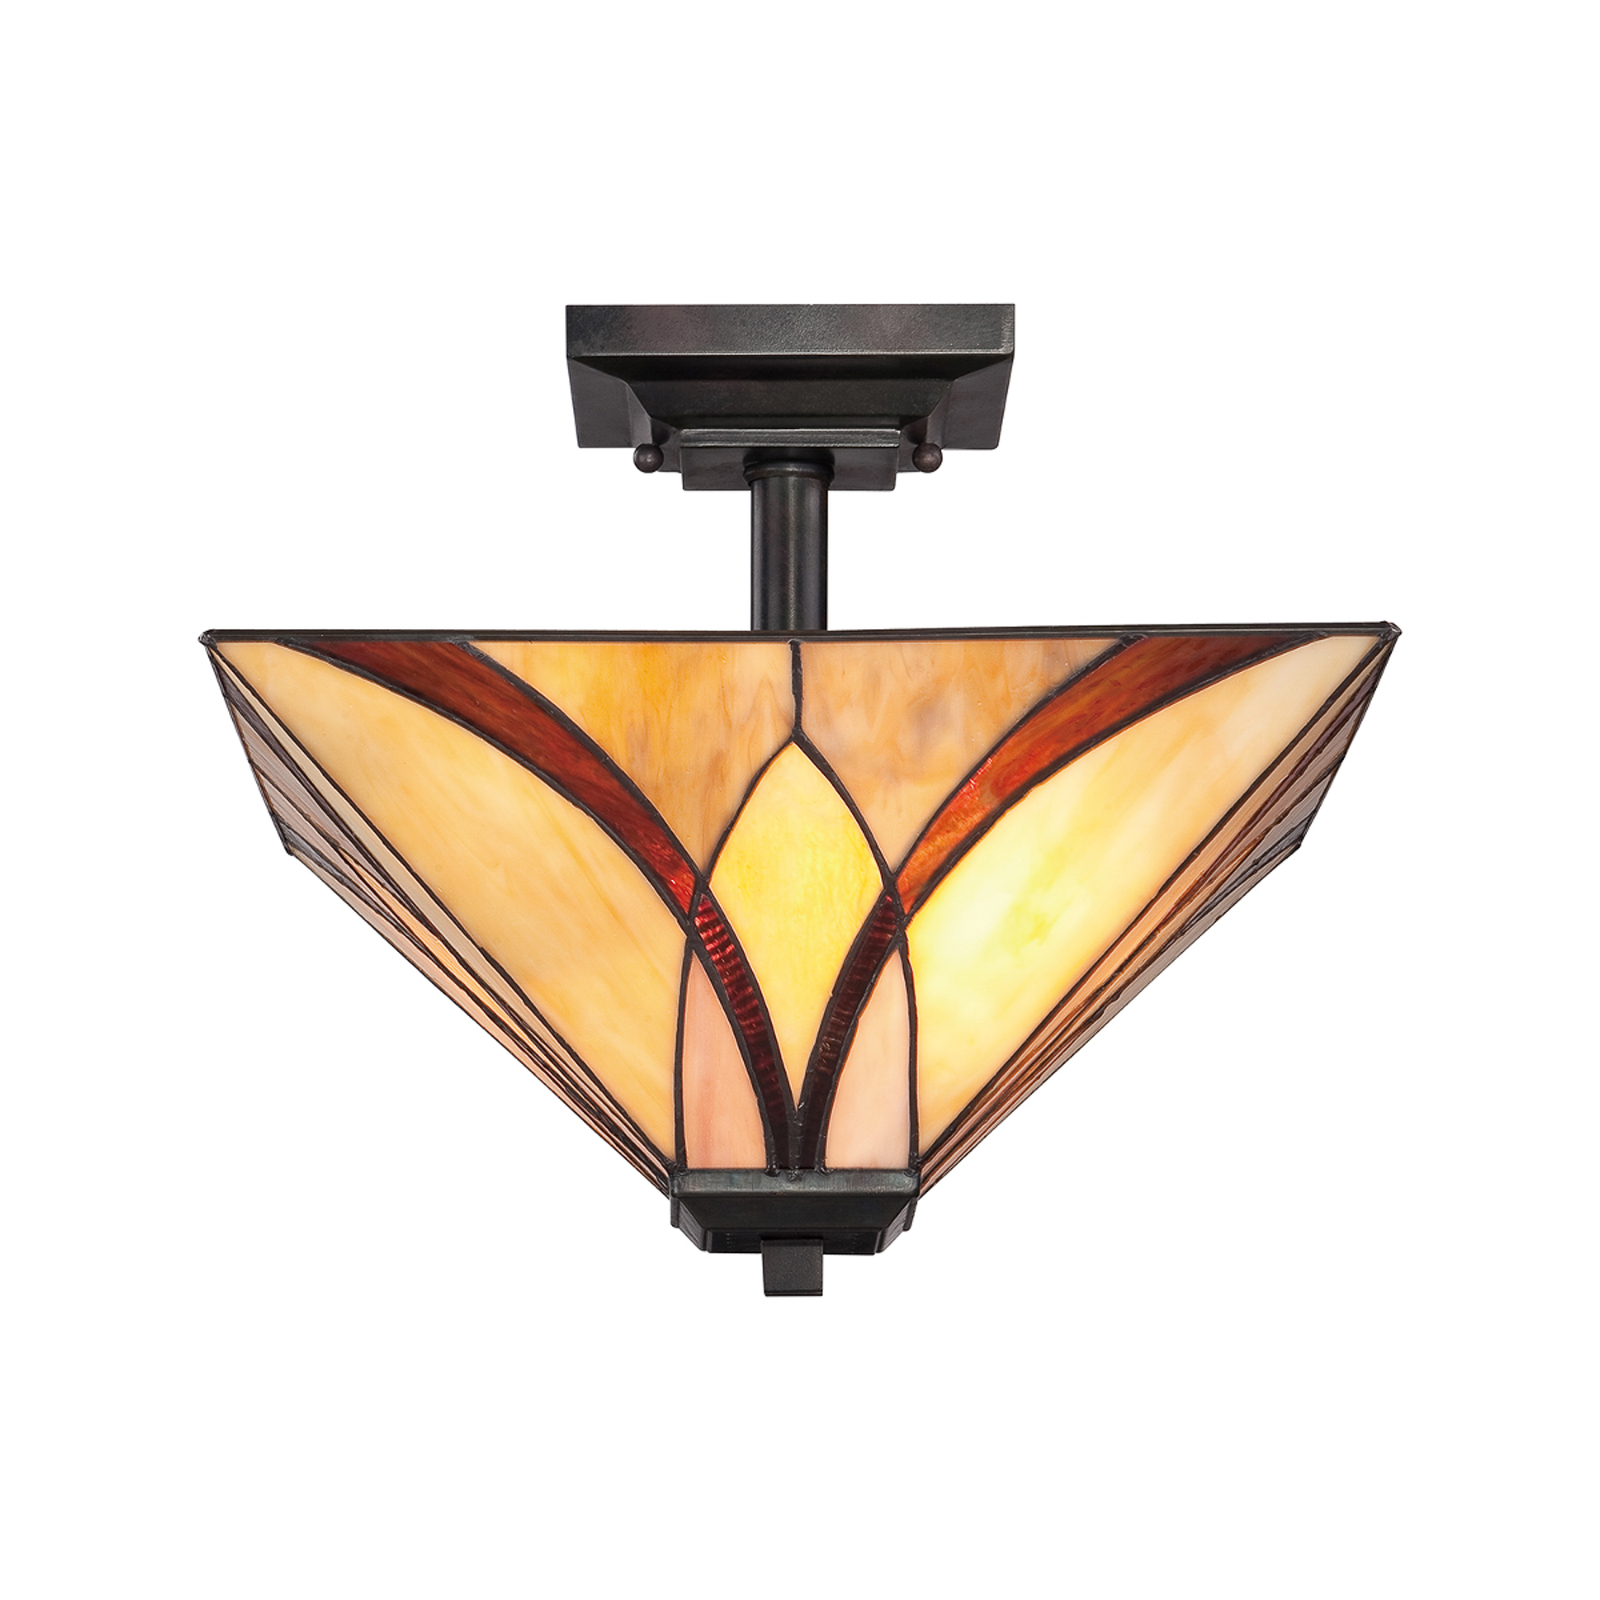 Asheville ceiling light Tiffany design, 30.5 cm